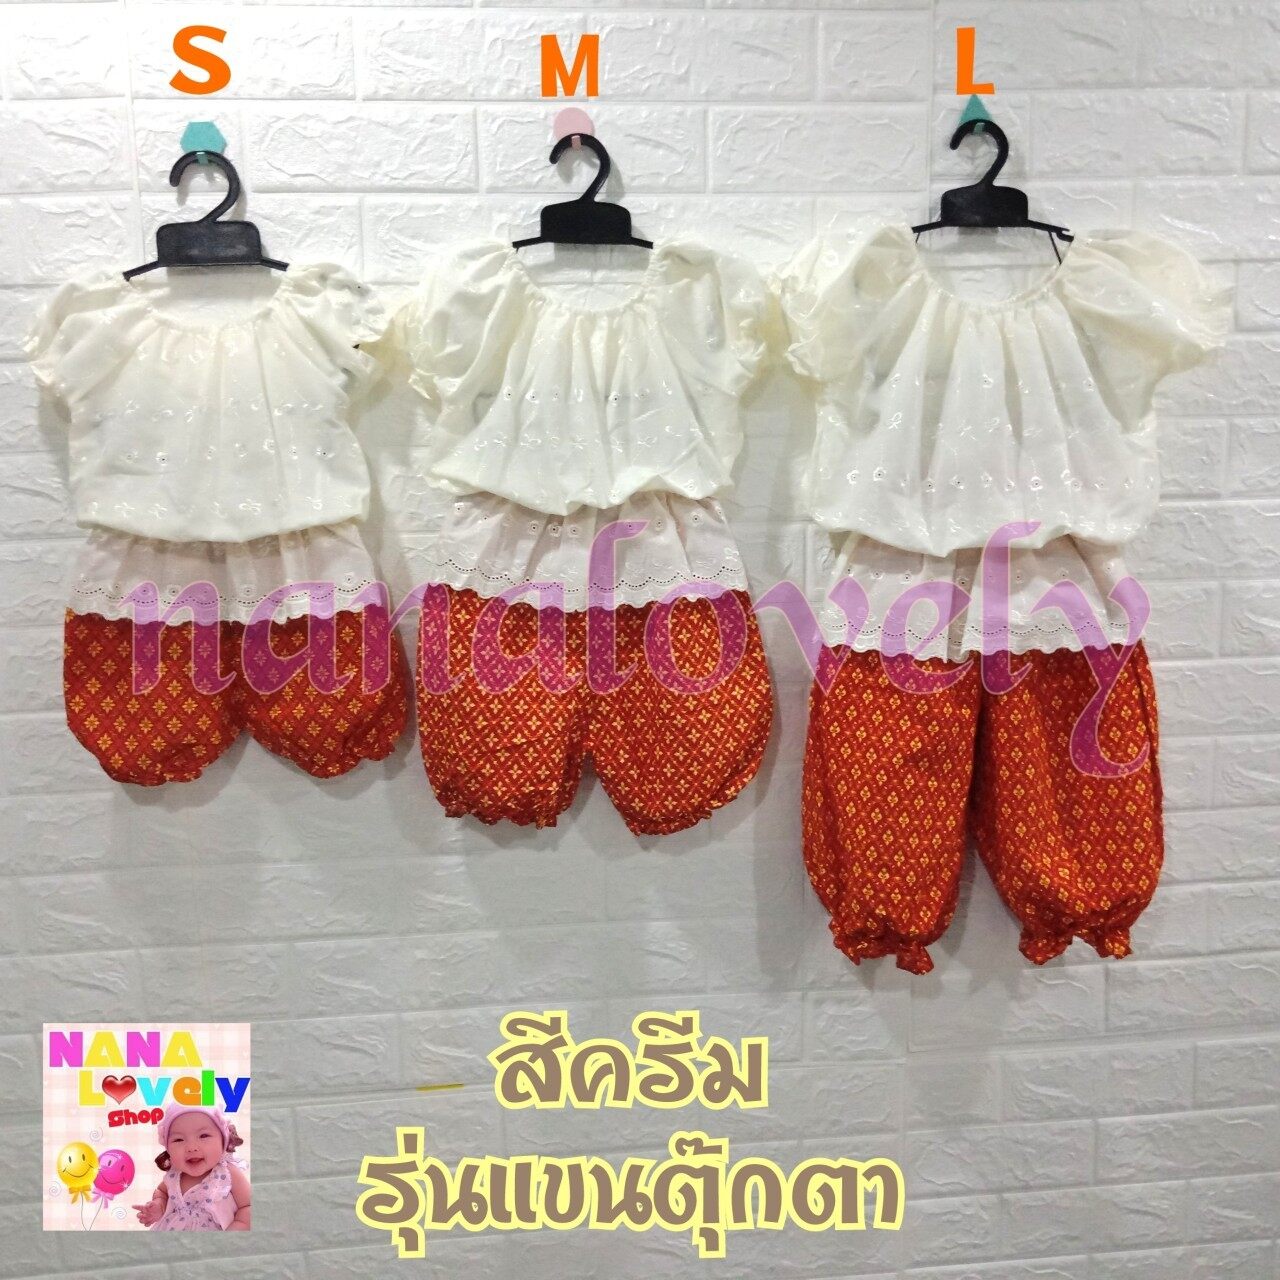 ชุดไทยเด็ก รุ่นแขนตุ๊กตา หลากสี มี 3 ไซส์ (3 เดือน-6ปี)